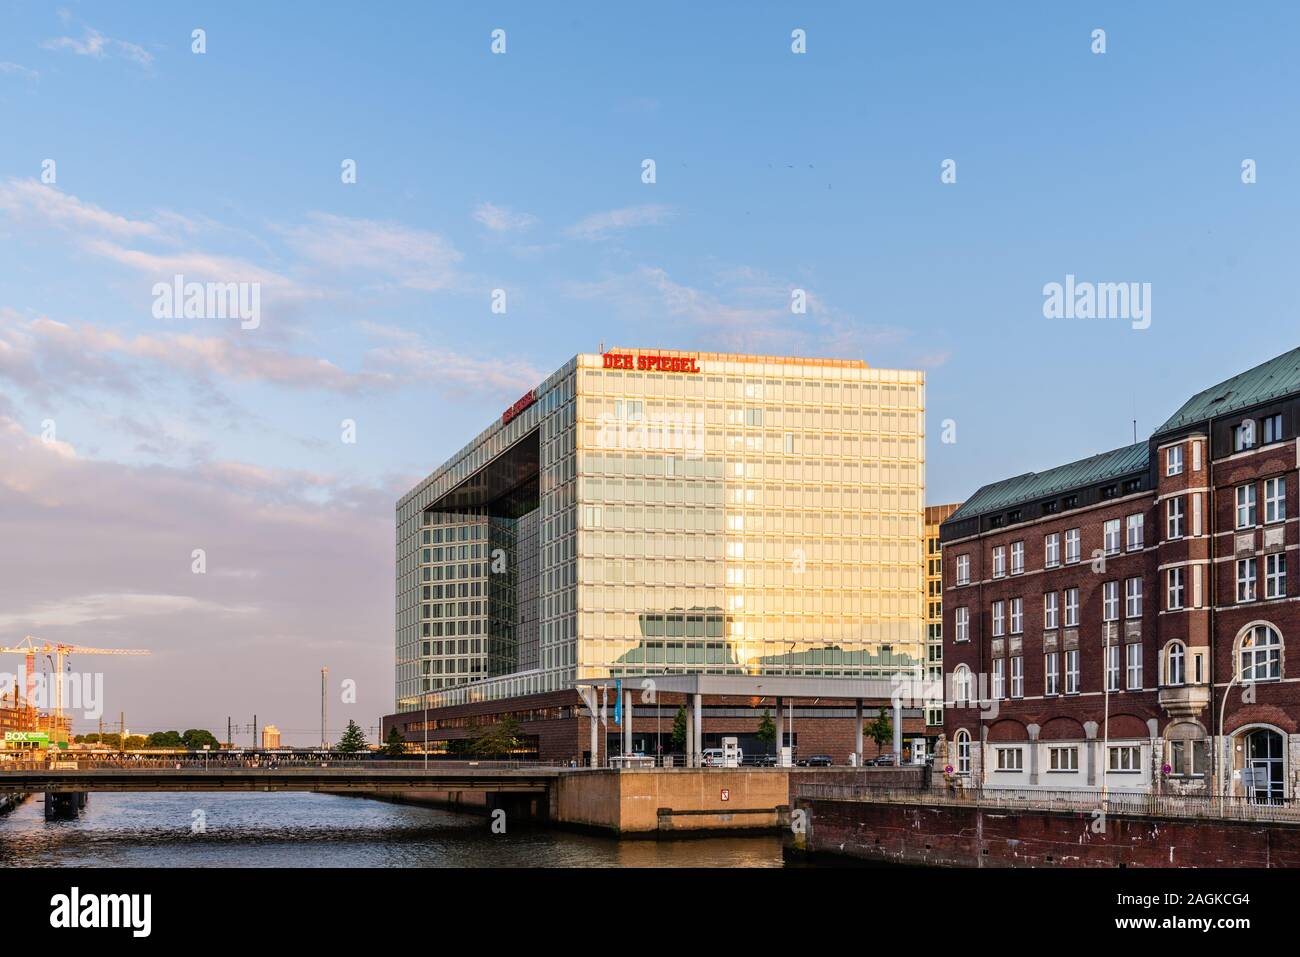 Hamburgo, Alemania - 3 de agosto, 2019: Der Spiegel headqurter en Hamburgo. Es una revista semanal de noticias alemán Foto de stock